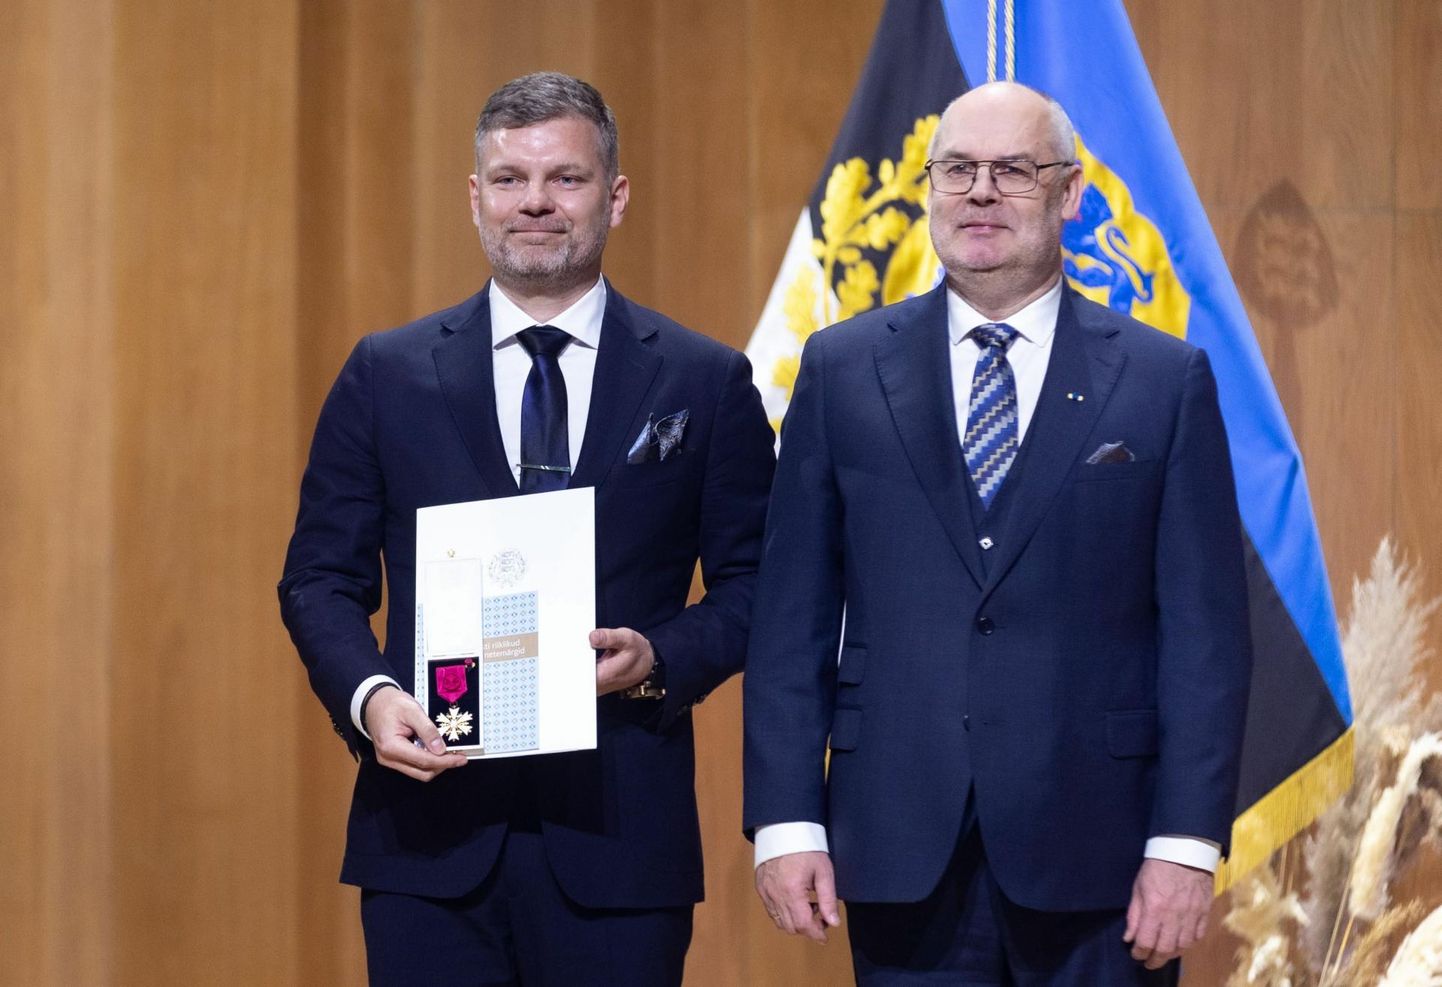 Vabariigi aastapäeval pälvis Eesti parimaks juhiks tunnistatud Veiko Veskimäe president Alar Kariselt Valgetähe IV klassi teenetemärgi.